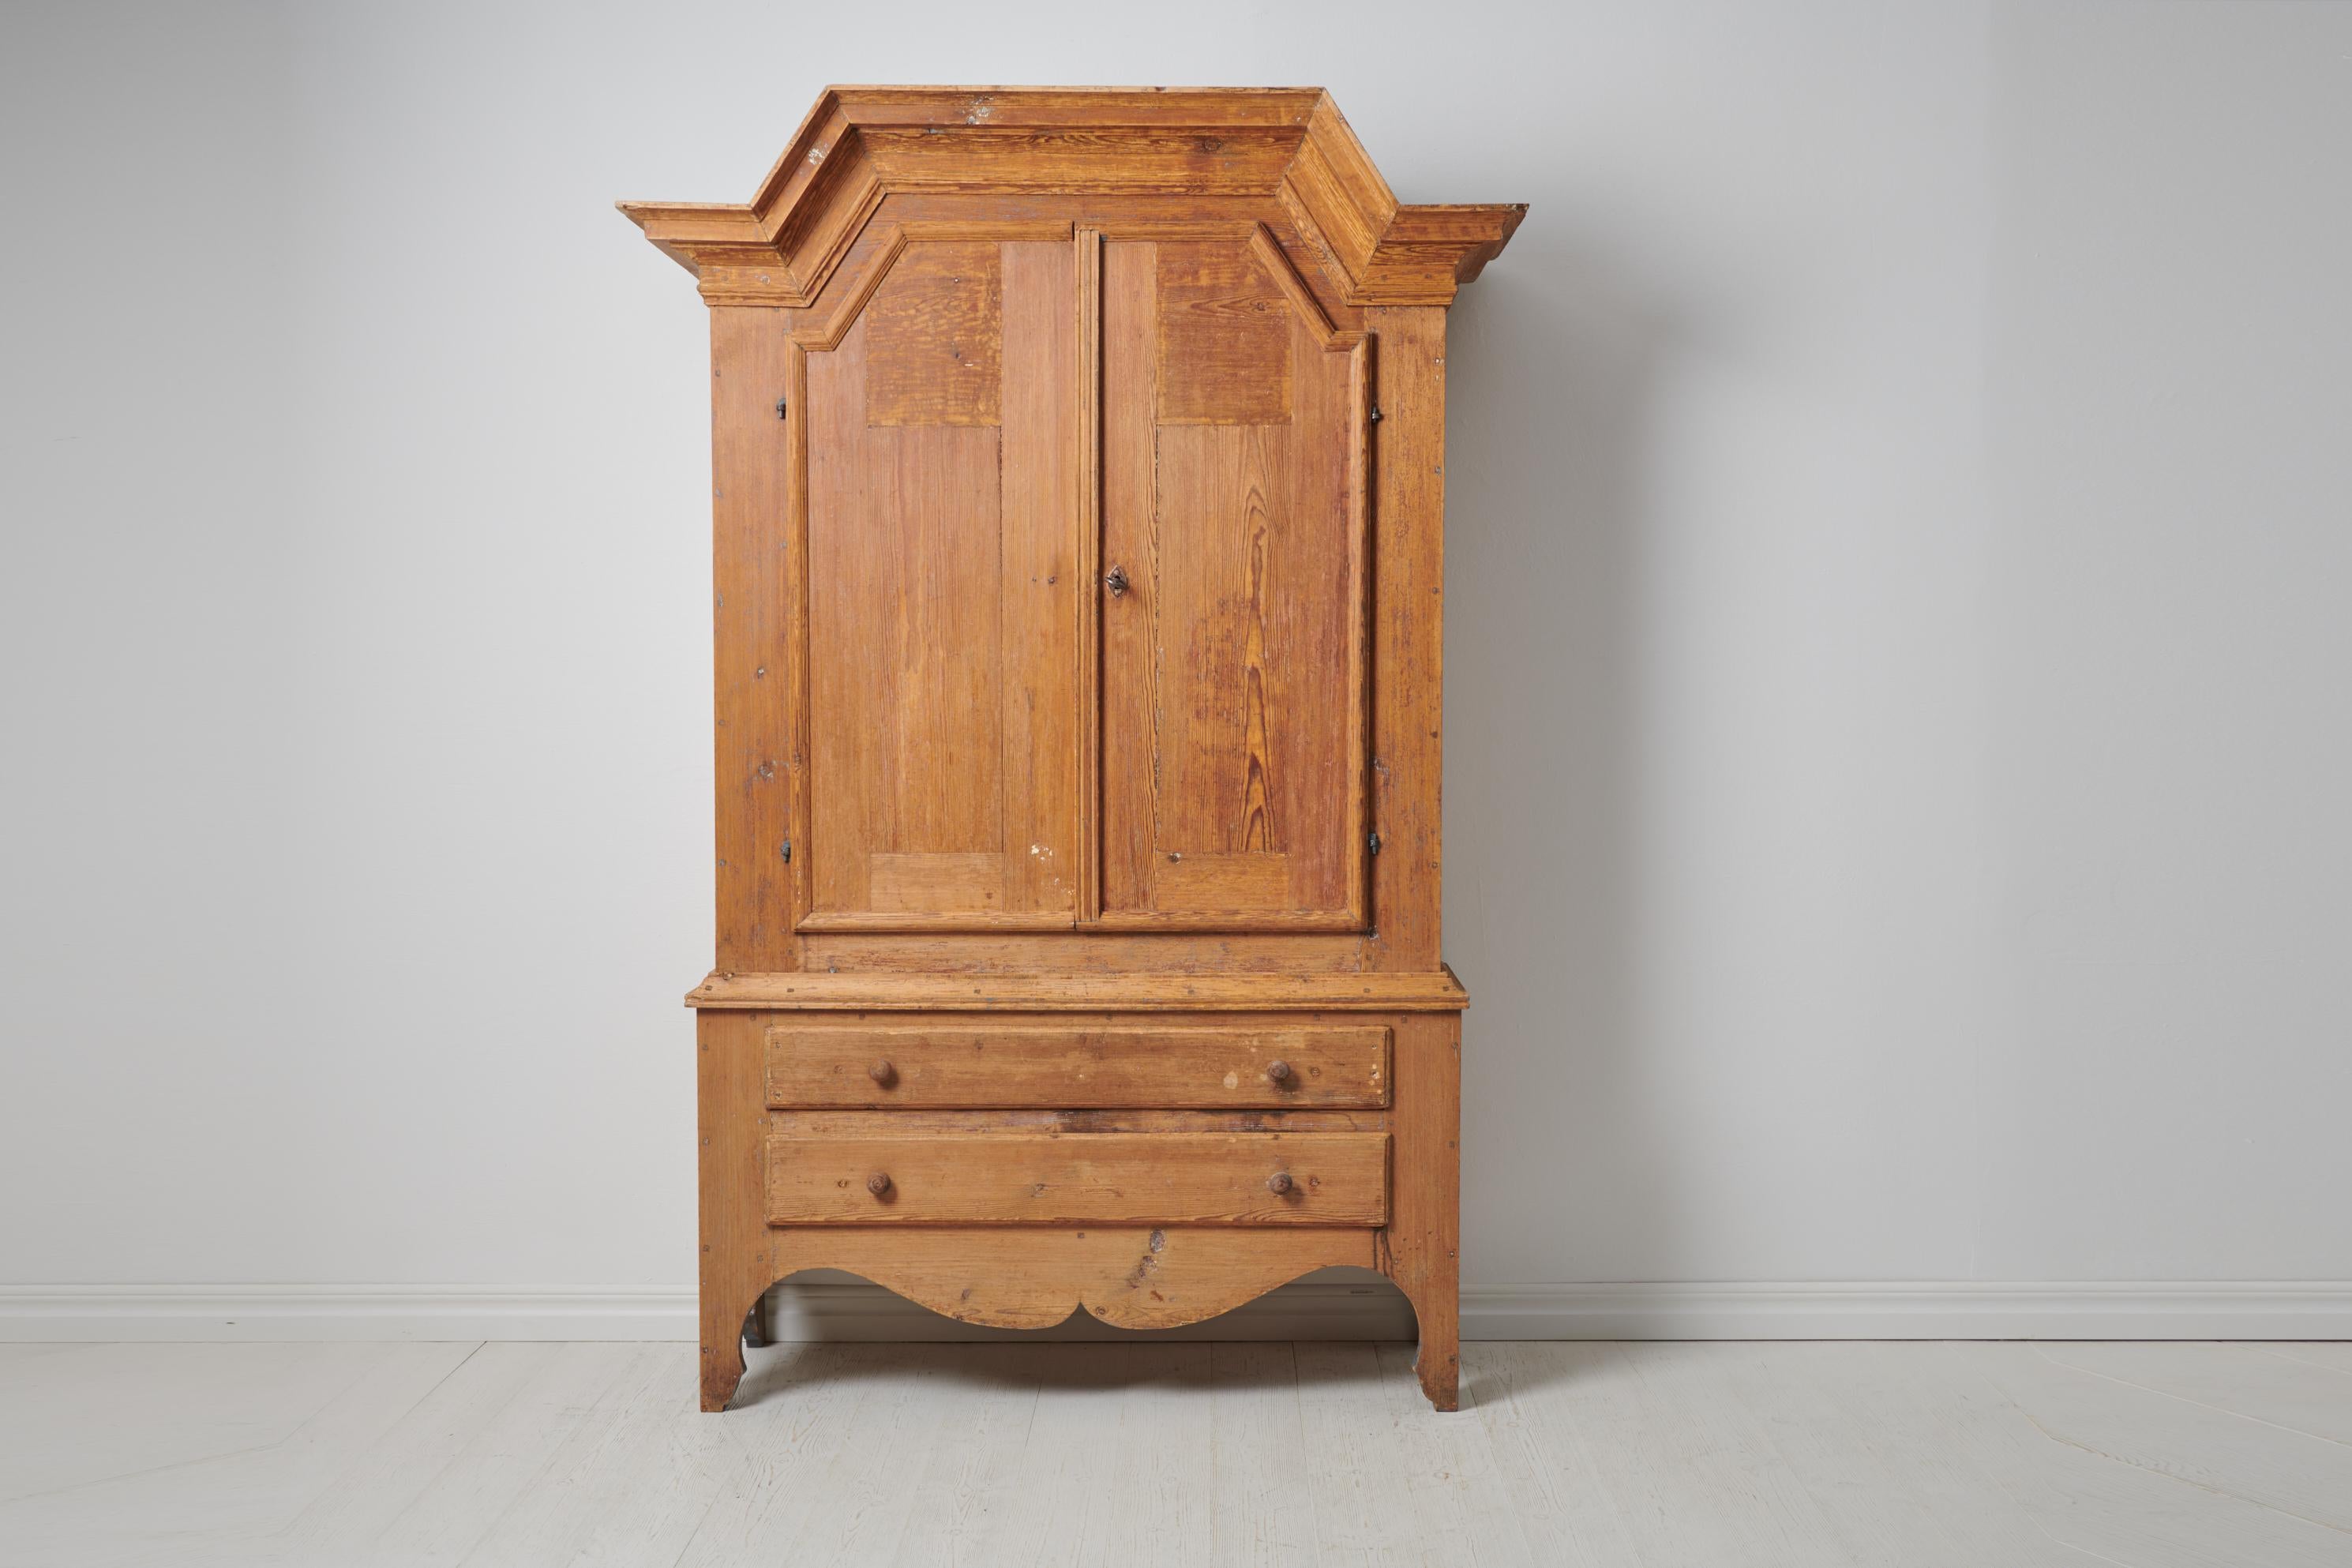 Cabinet antique d'art populaire suédois fabriqué dans les premières années du XIXe siècle, vers 1810. L'armoire est fabriquée à la main en pin massif. L'armoire présente une surface rustique avec du bois de pin nu où le grain du bois est visible.